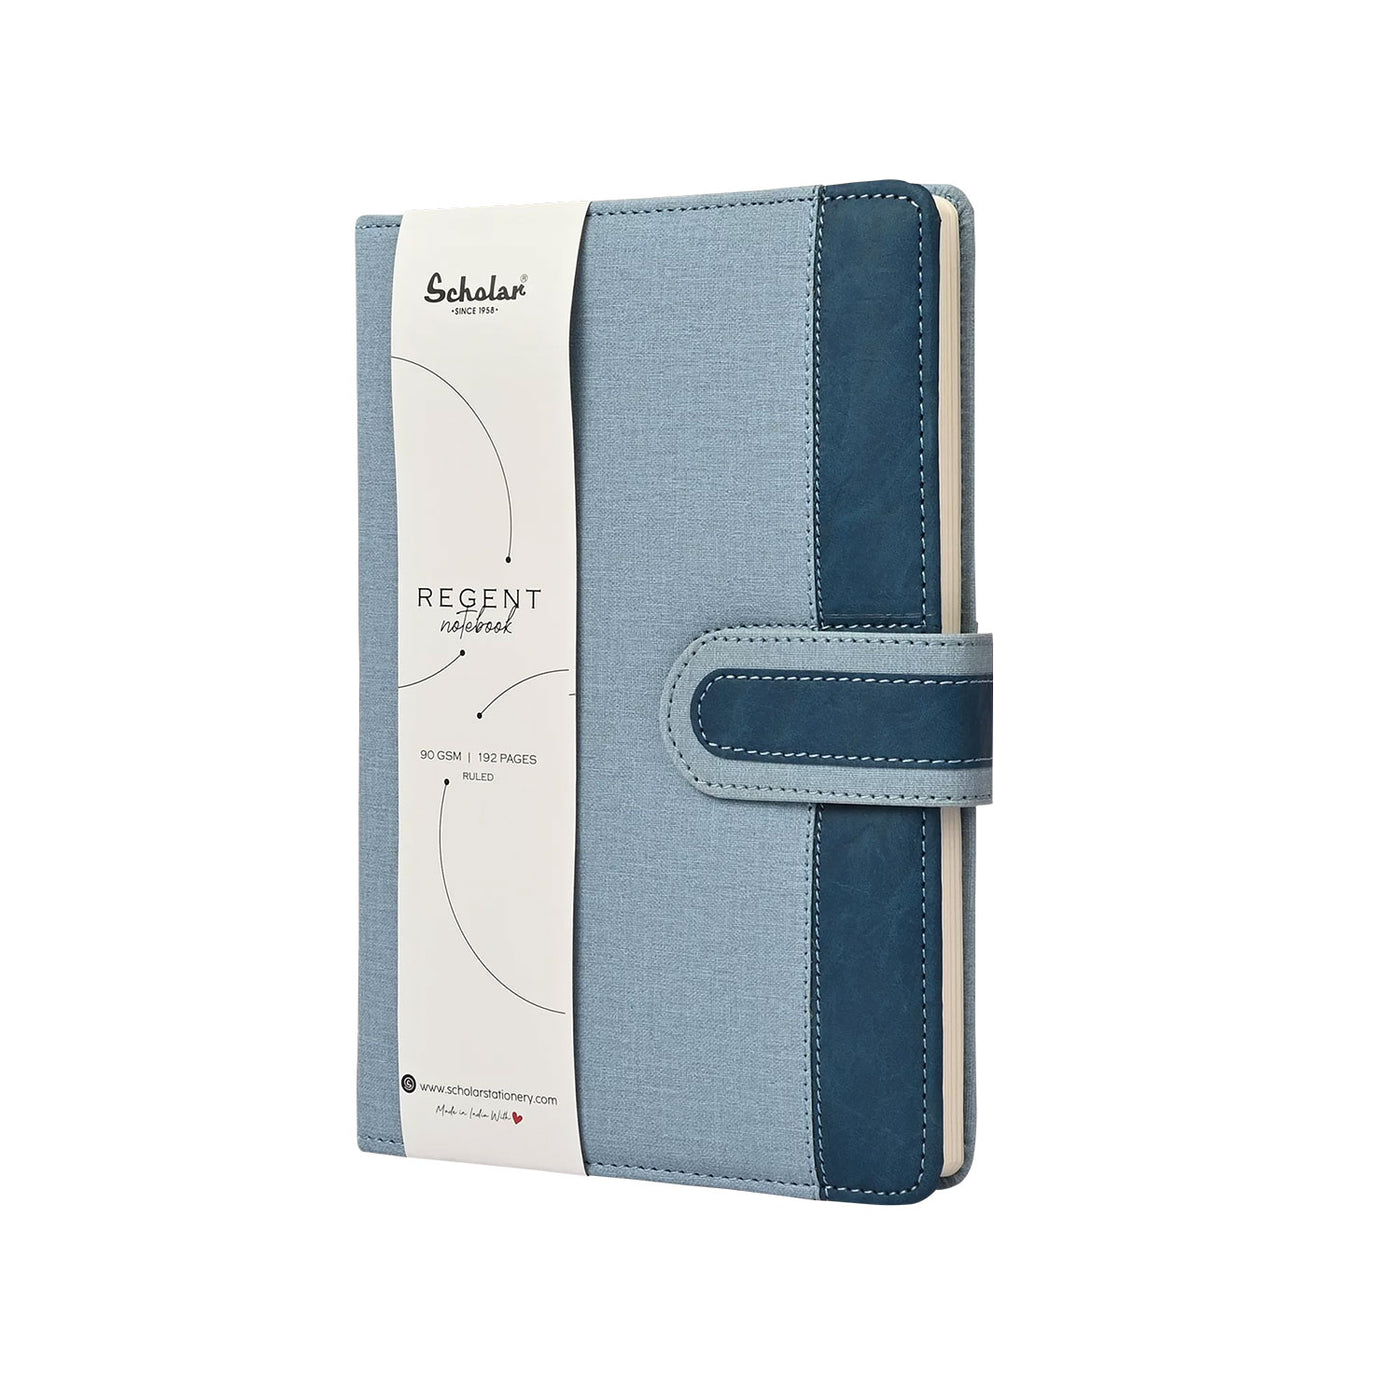 Scholar Regent Blue Notebook - B5 Ruled 2